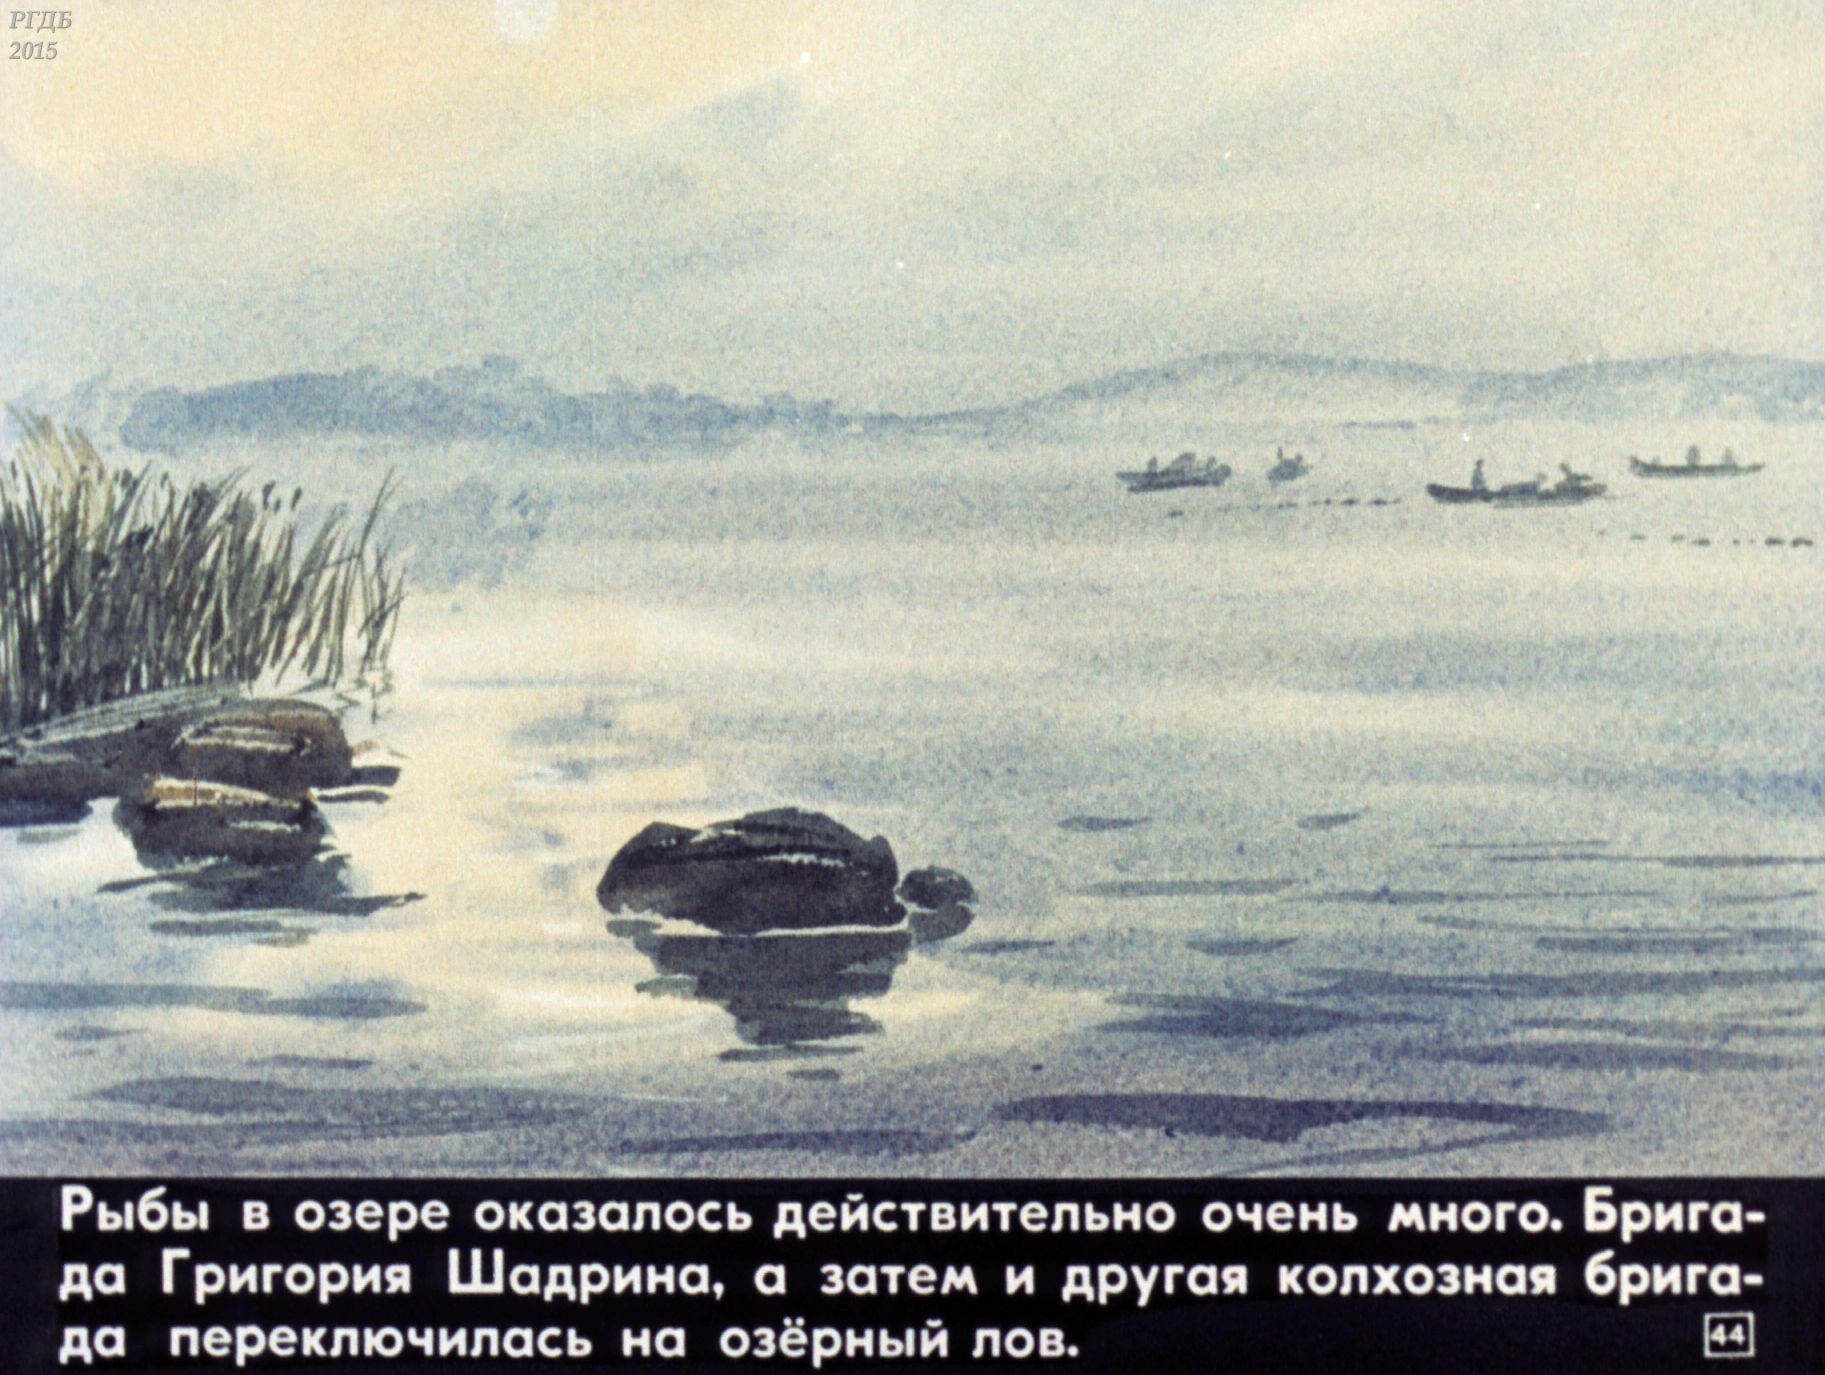 Первый пароход который встретил васютка. Васюткино озеро. Васюткино озеро Васютка. Иллюстрация к рассказу Васюткино озеро с цитатой. Озеро из Васюткино озеро.